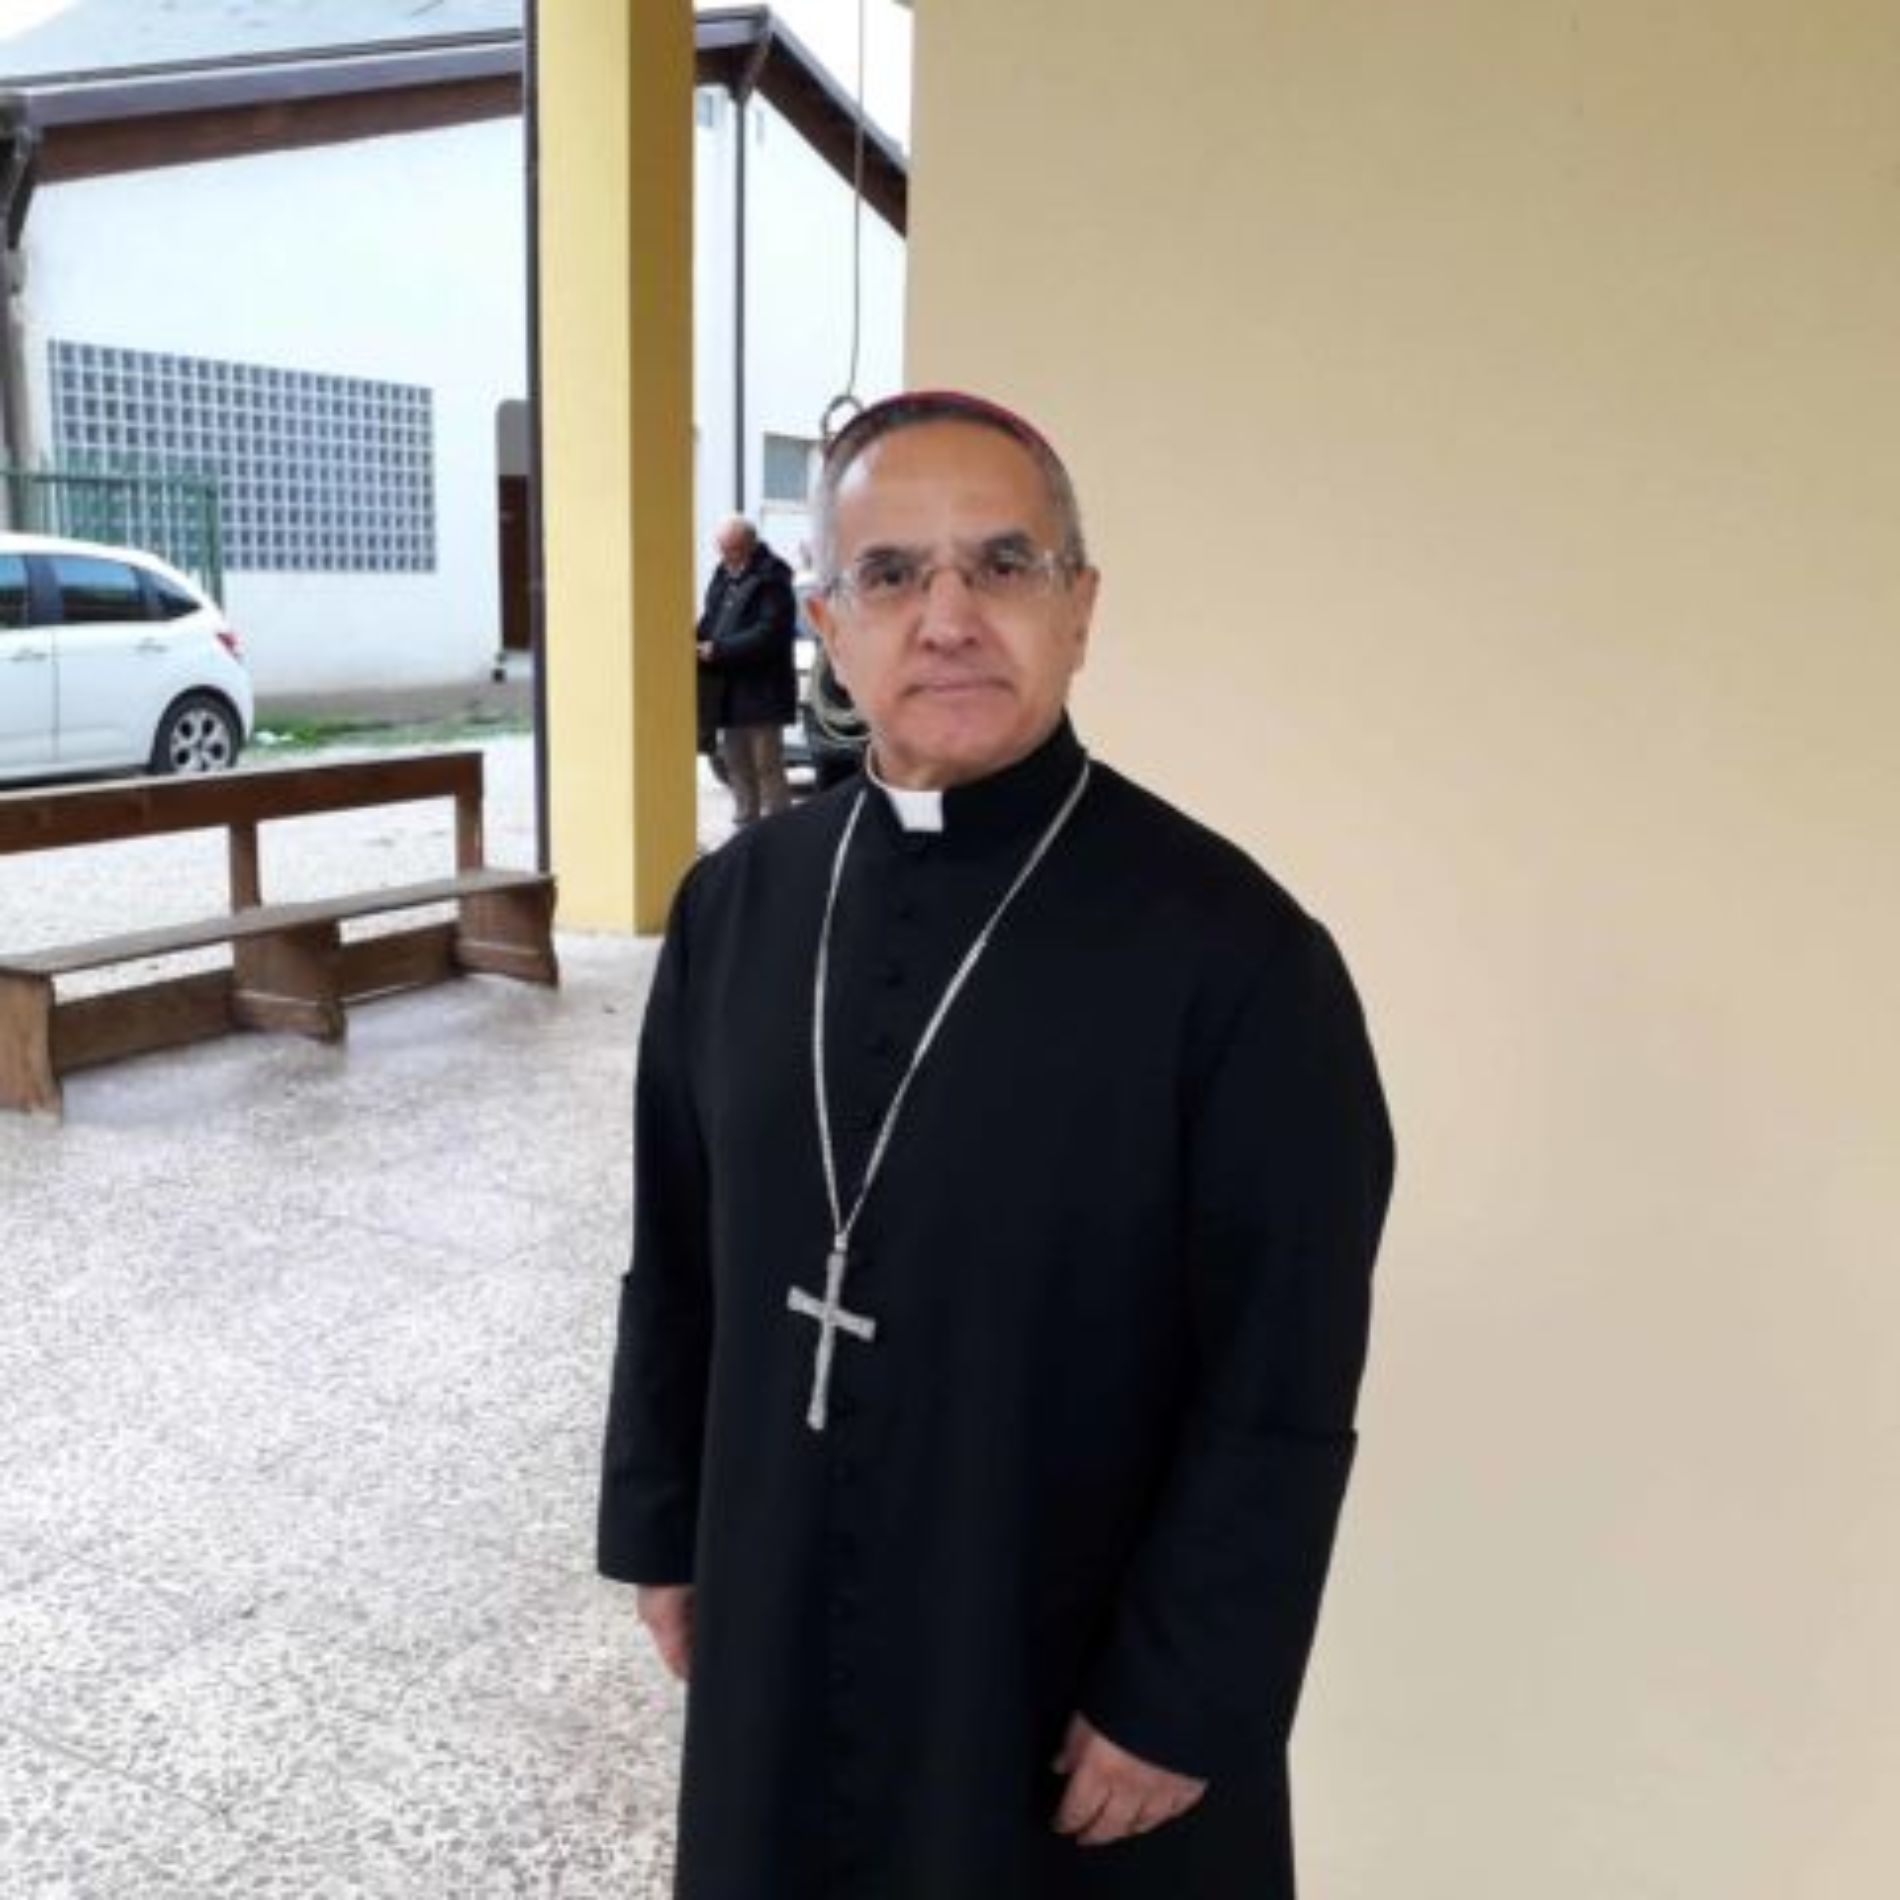 BARRAFRANCA. Senso e significato della “Giornata Mondiale del Povero”. A spiegarla è il vescovo Monsignor Rosario Gisana.